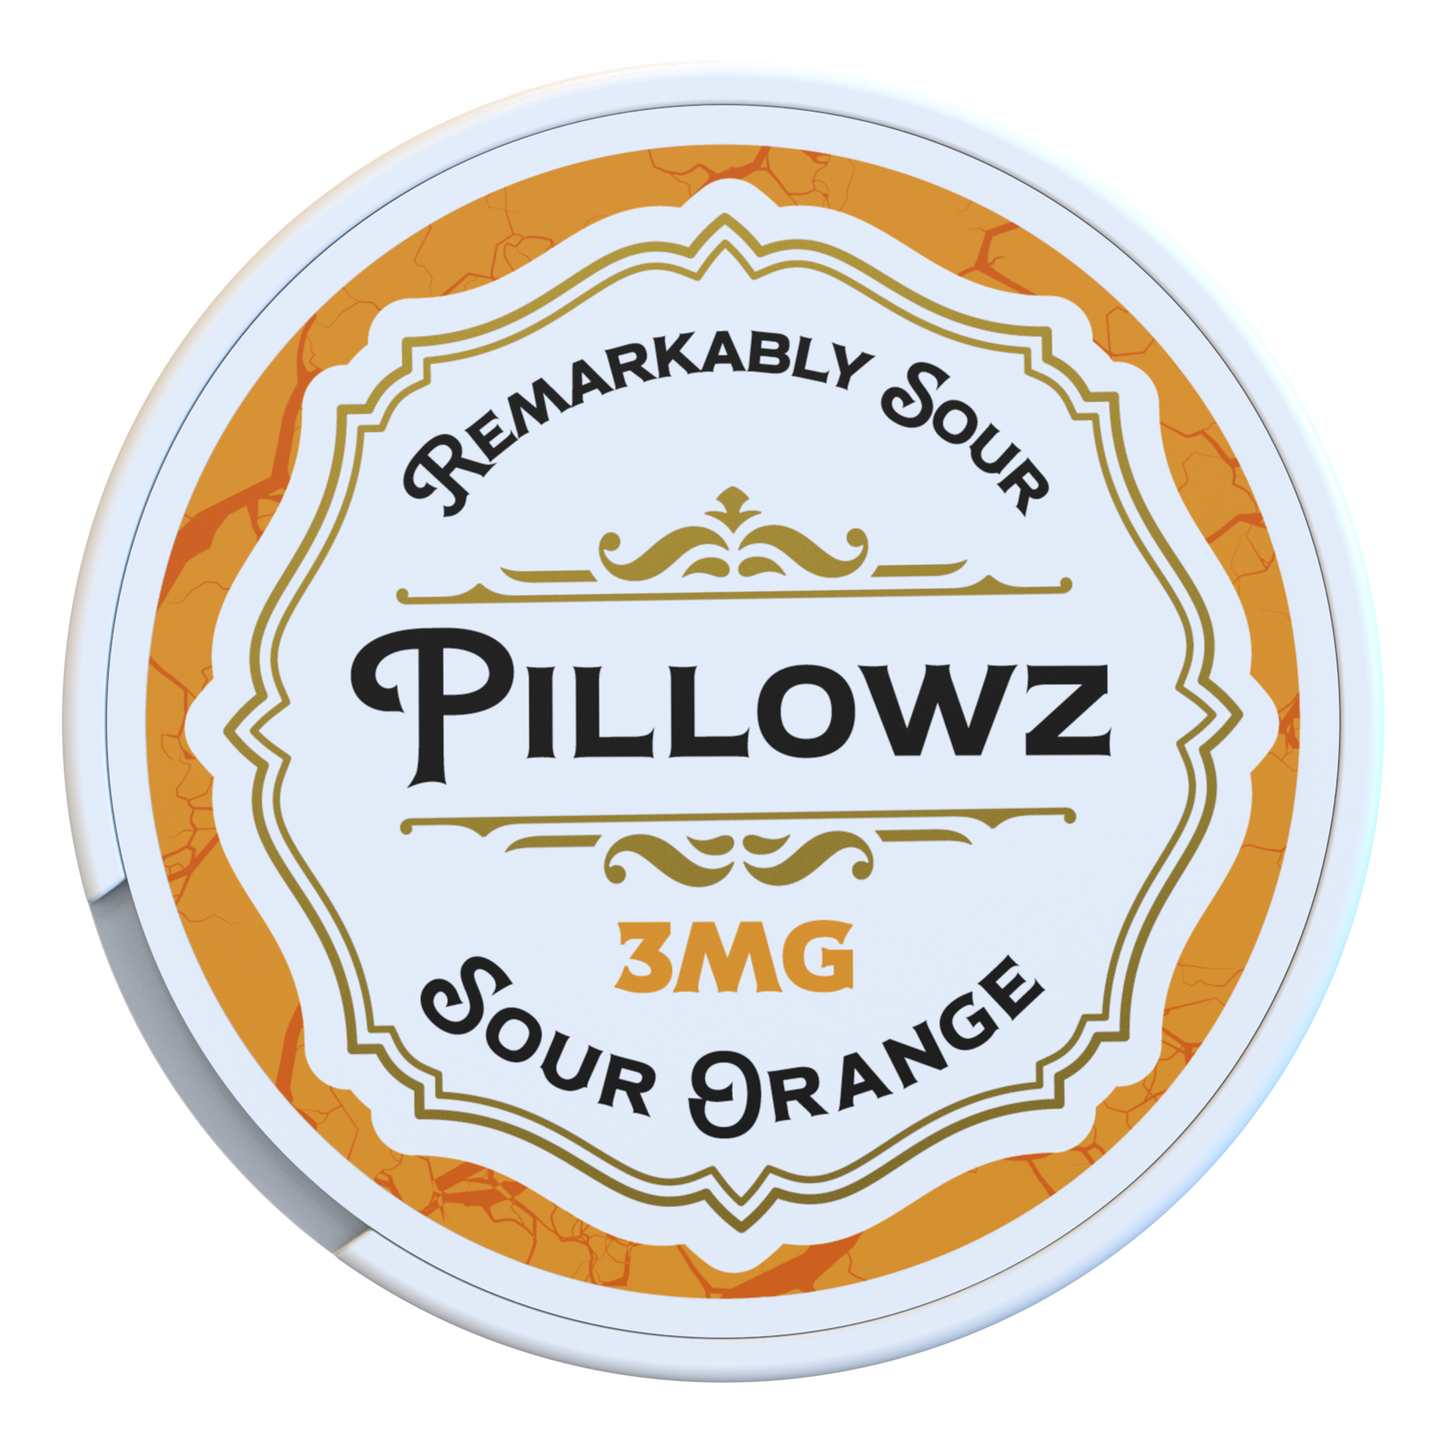 Pillowz Nicotine Pouches Sour Orange